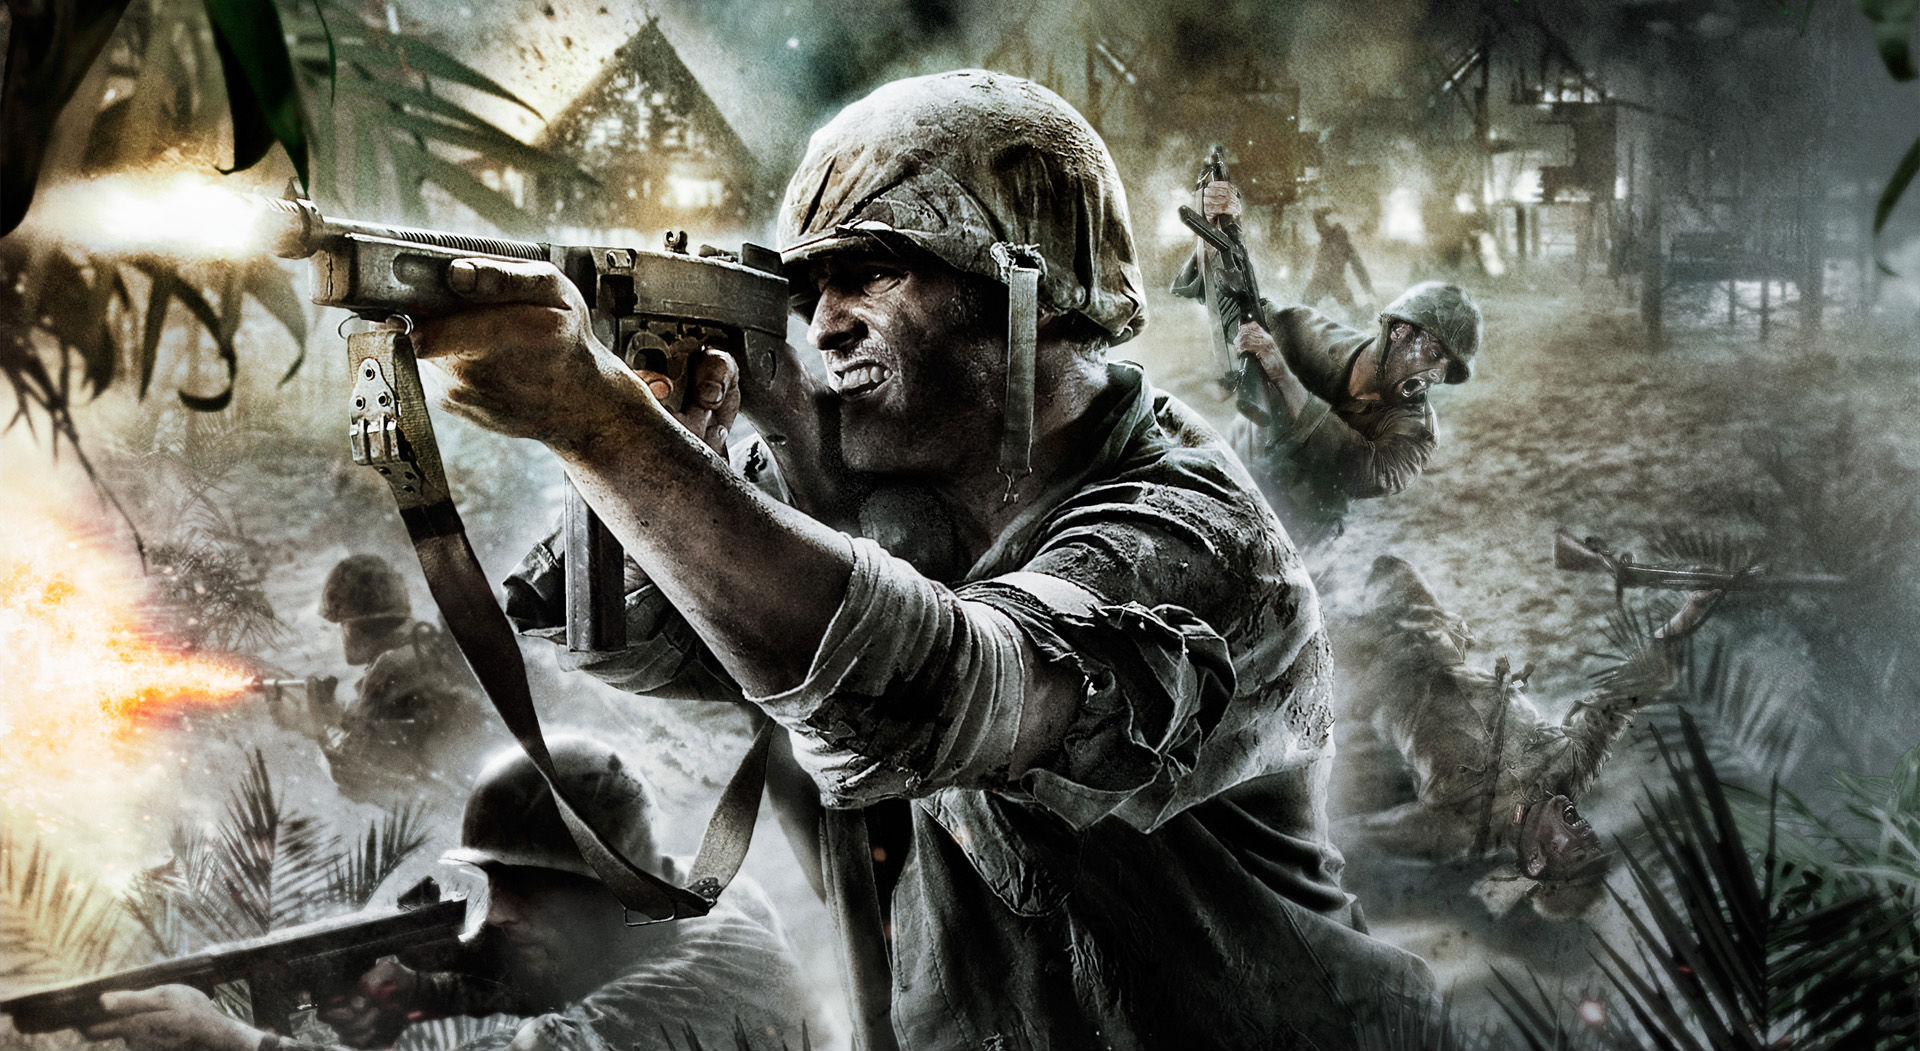 Melhores papéis de parede de Call Of Duty: World At War para tela do telefone